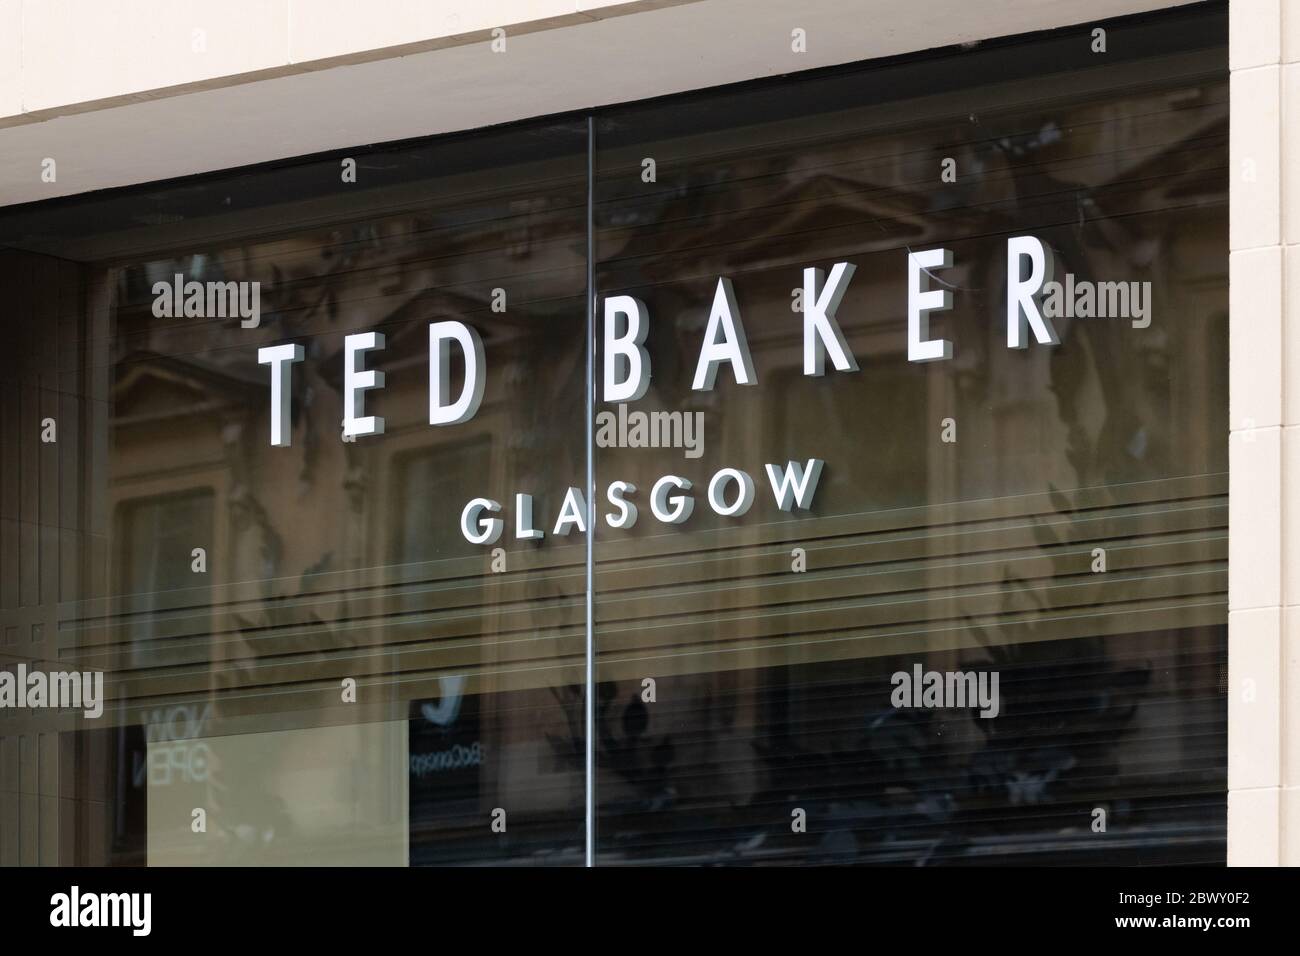 Ted Baker store, Glasgow, Scotland, UK Stock Photo